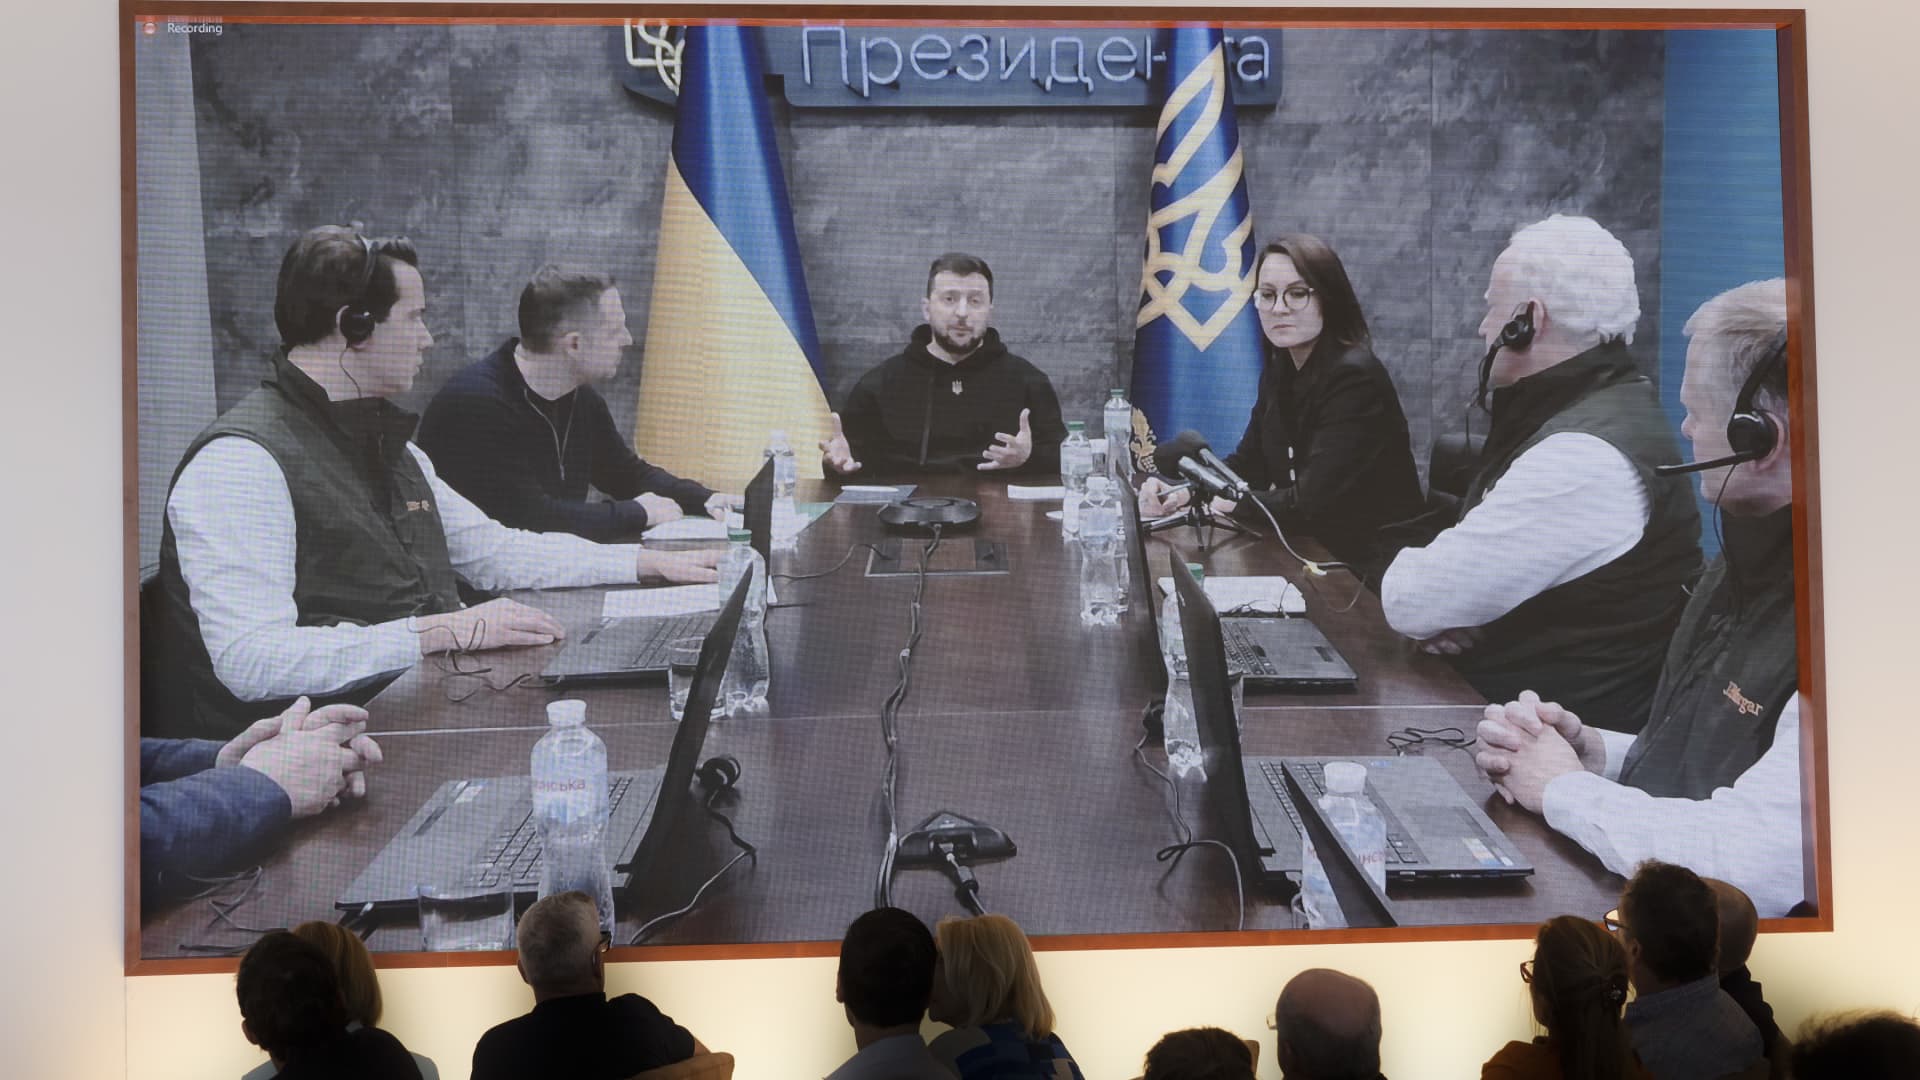 यूक्रेन आर्थिक सलाहकार के रूप में जेपी मॉर्गन चेस के साथ युद्ध के बाद के पुनर्निर्माण के प्रयासों की योजना बना रहा है